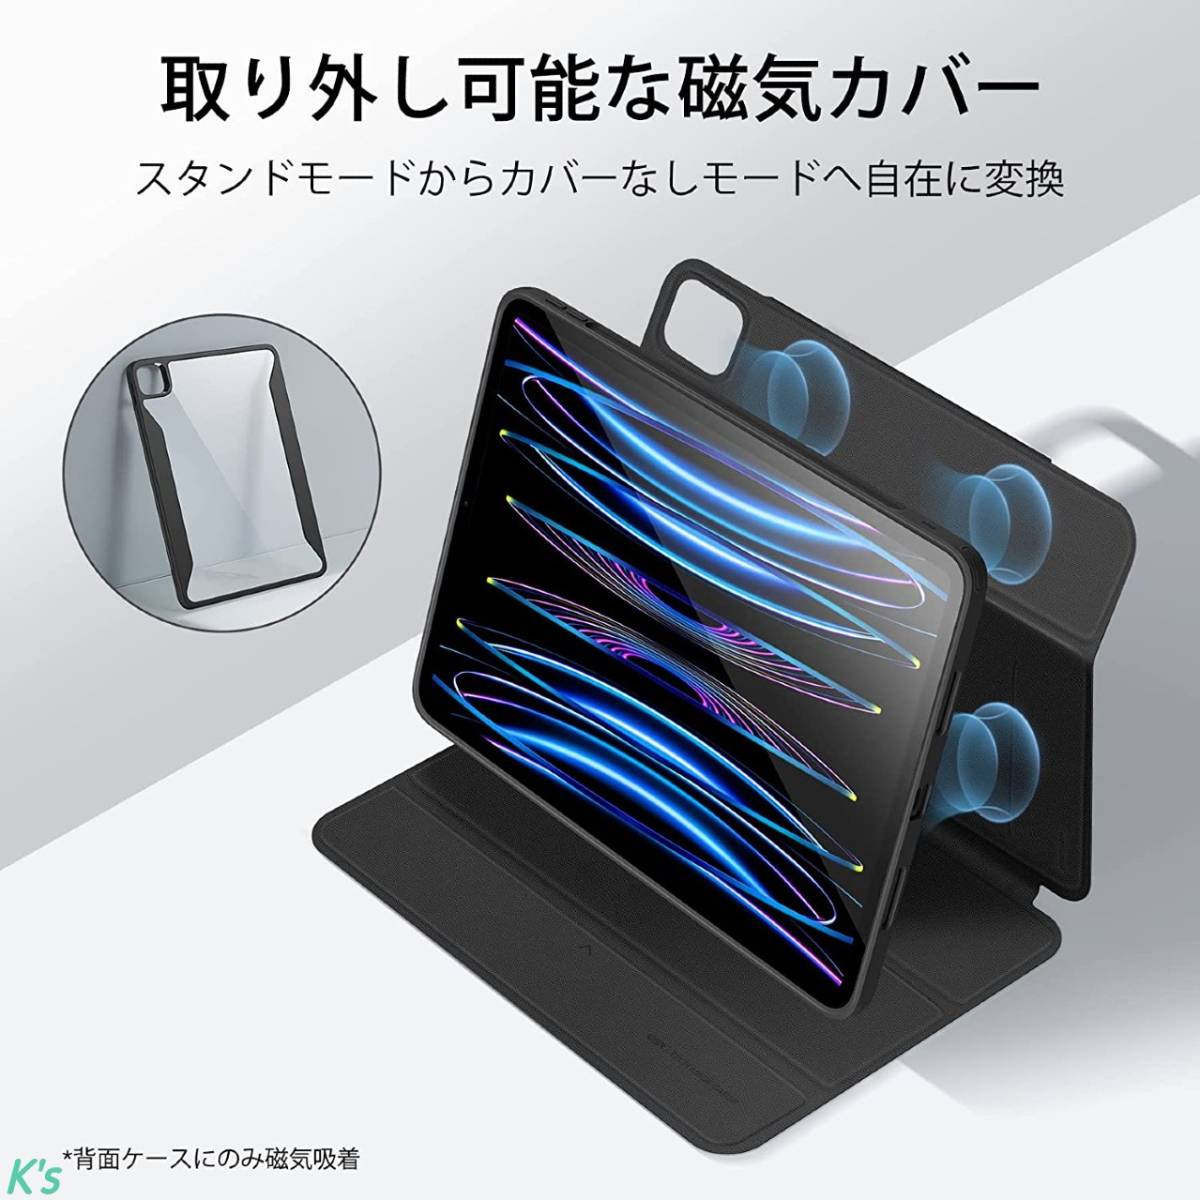 ブラック 取り外し可能な磁気カバー iPad Pro 11 第4世代 ( 2022 / 2021 ) Pencil 2 対応 オートスリープ / ウェイク対応 ケース カバー